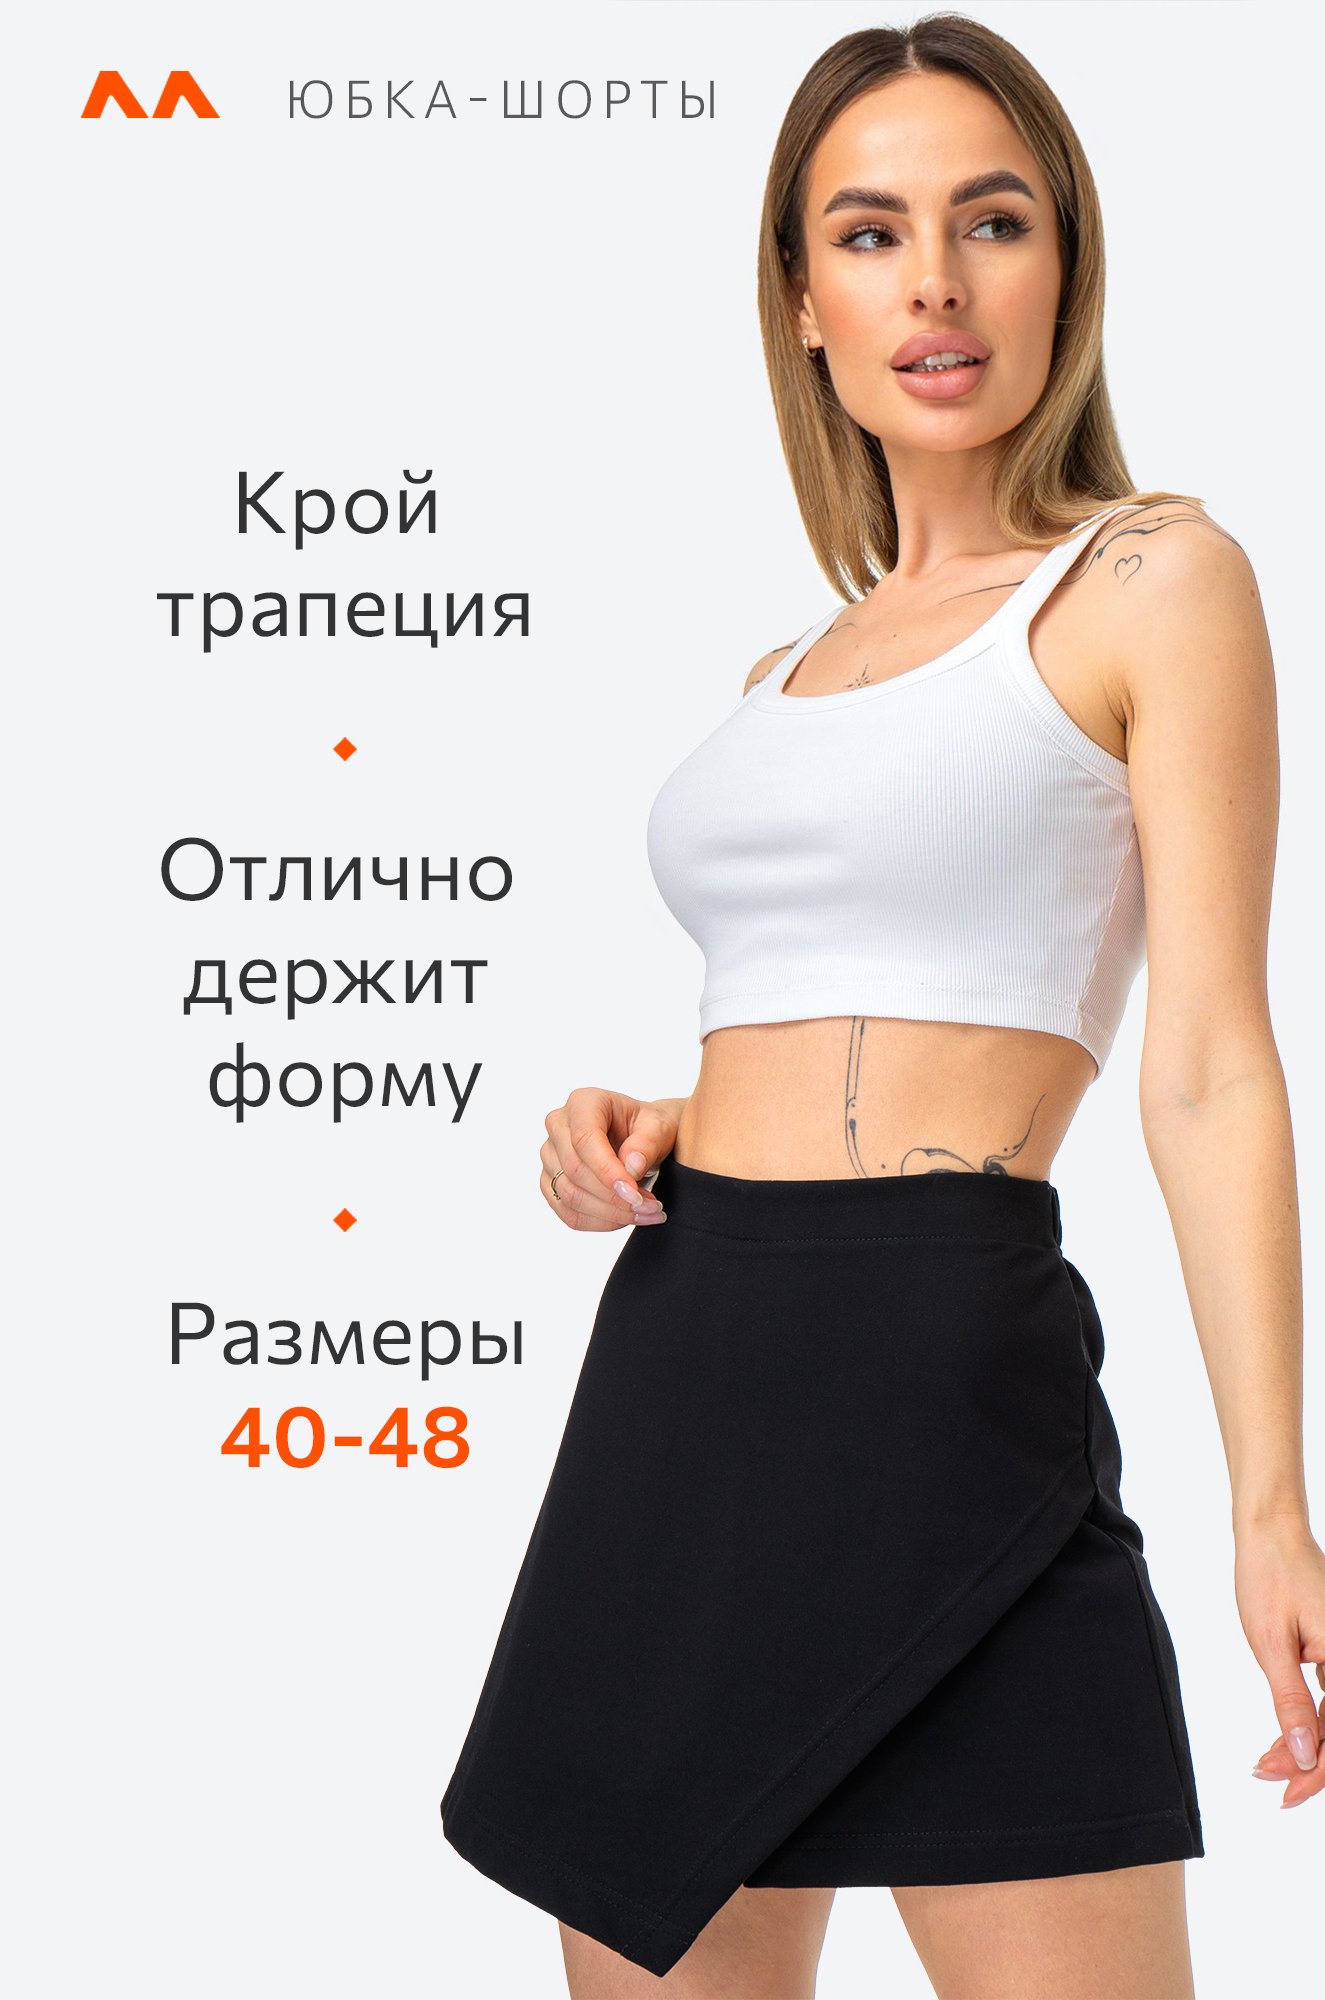 Женская юбка-шорты из футера двухнитки Happy Fox